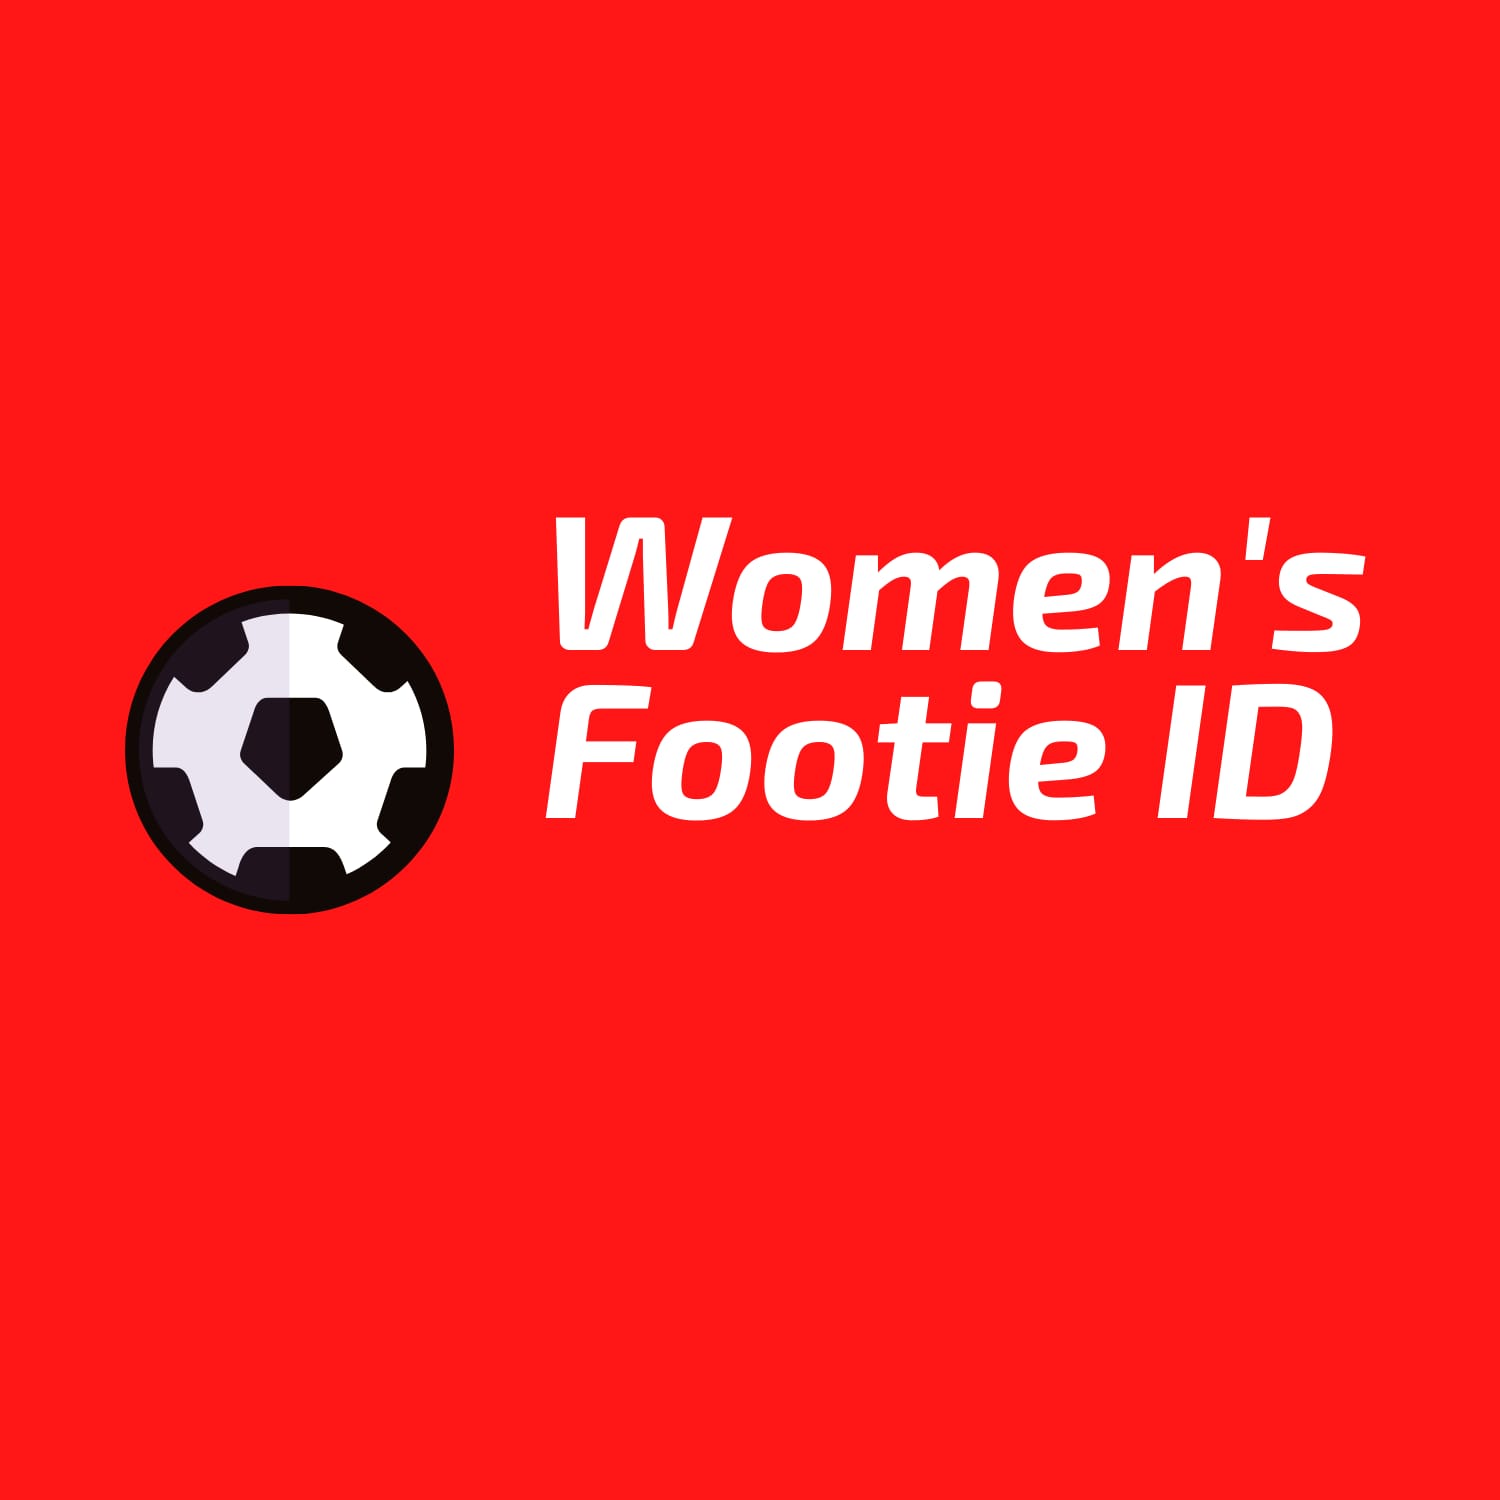 Women's Footie Indonesia, Komunitas Penggemar Sepak Bola Wanita yang Sudah Eksis sejak 2013